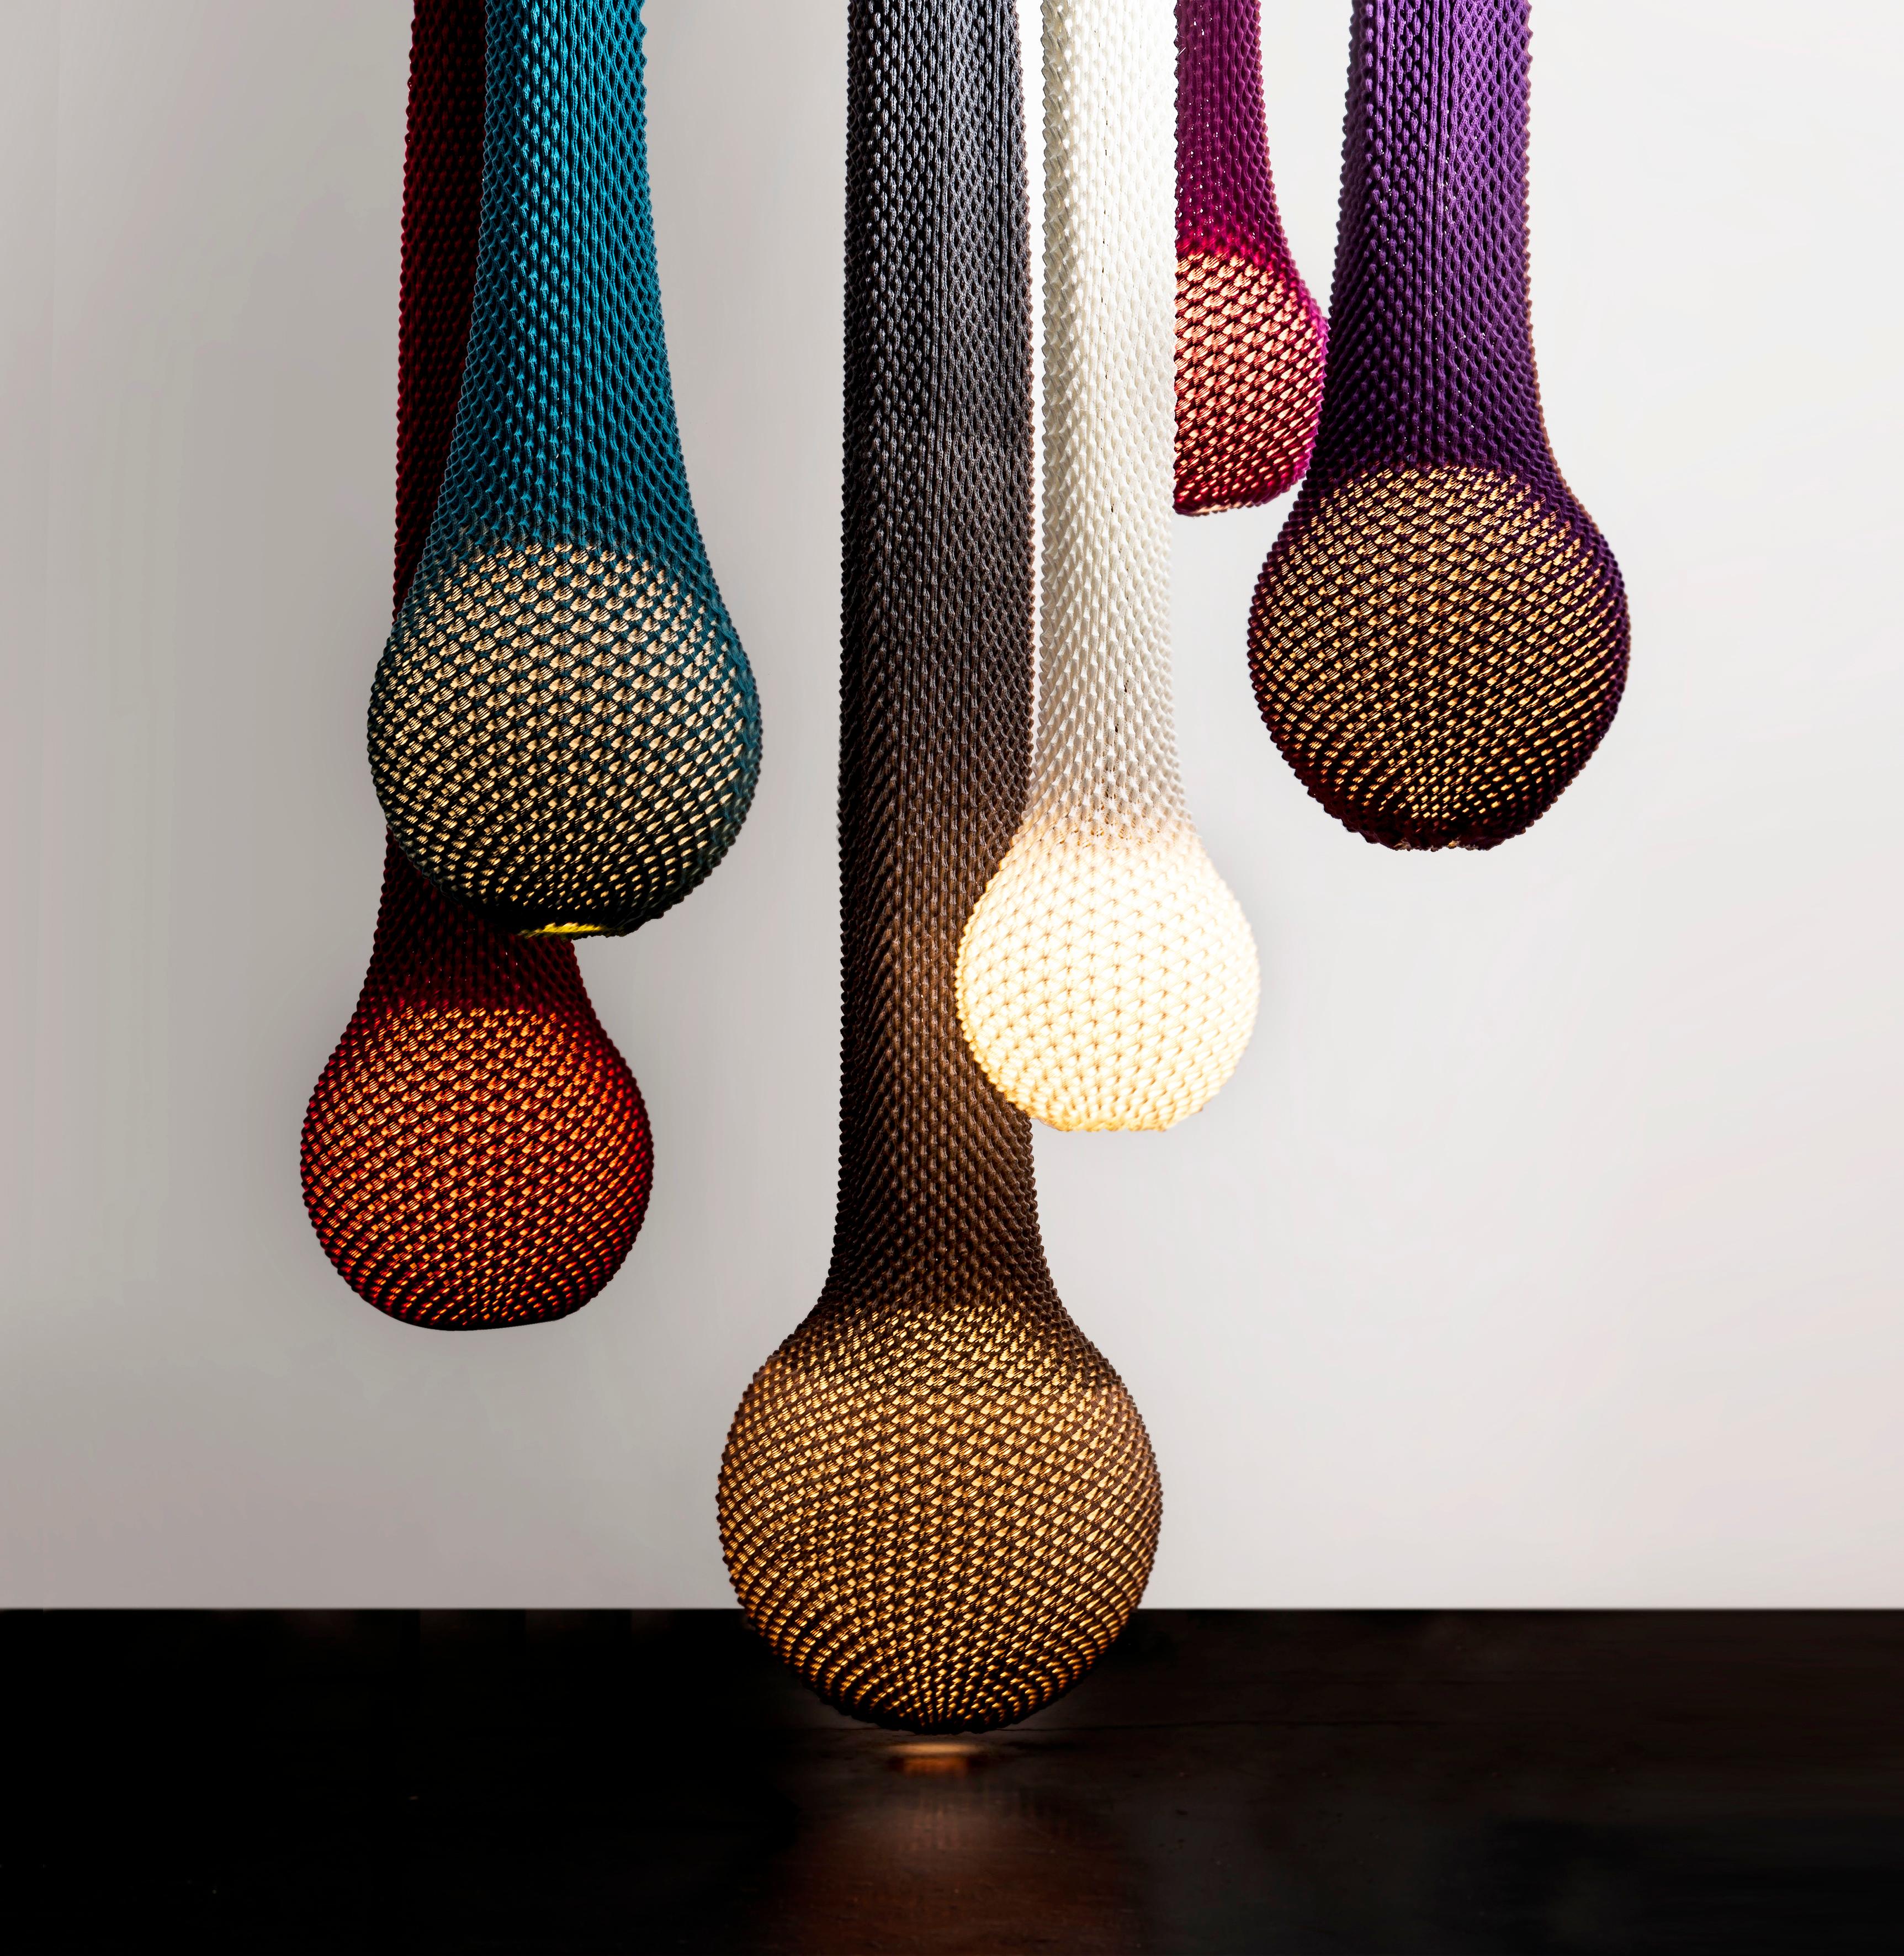 La Collection S est une collection primée. 
série d'éclairages qui allie technologie et tradition.
En tricotant des fils acryliques dans des motifs fixes avec de la laine au crochet, on obtient une feuille de tissu tridimensionnelle qui sert de